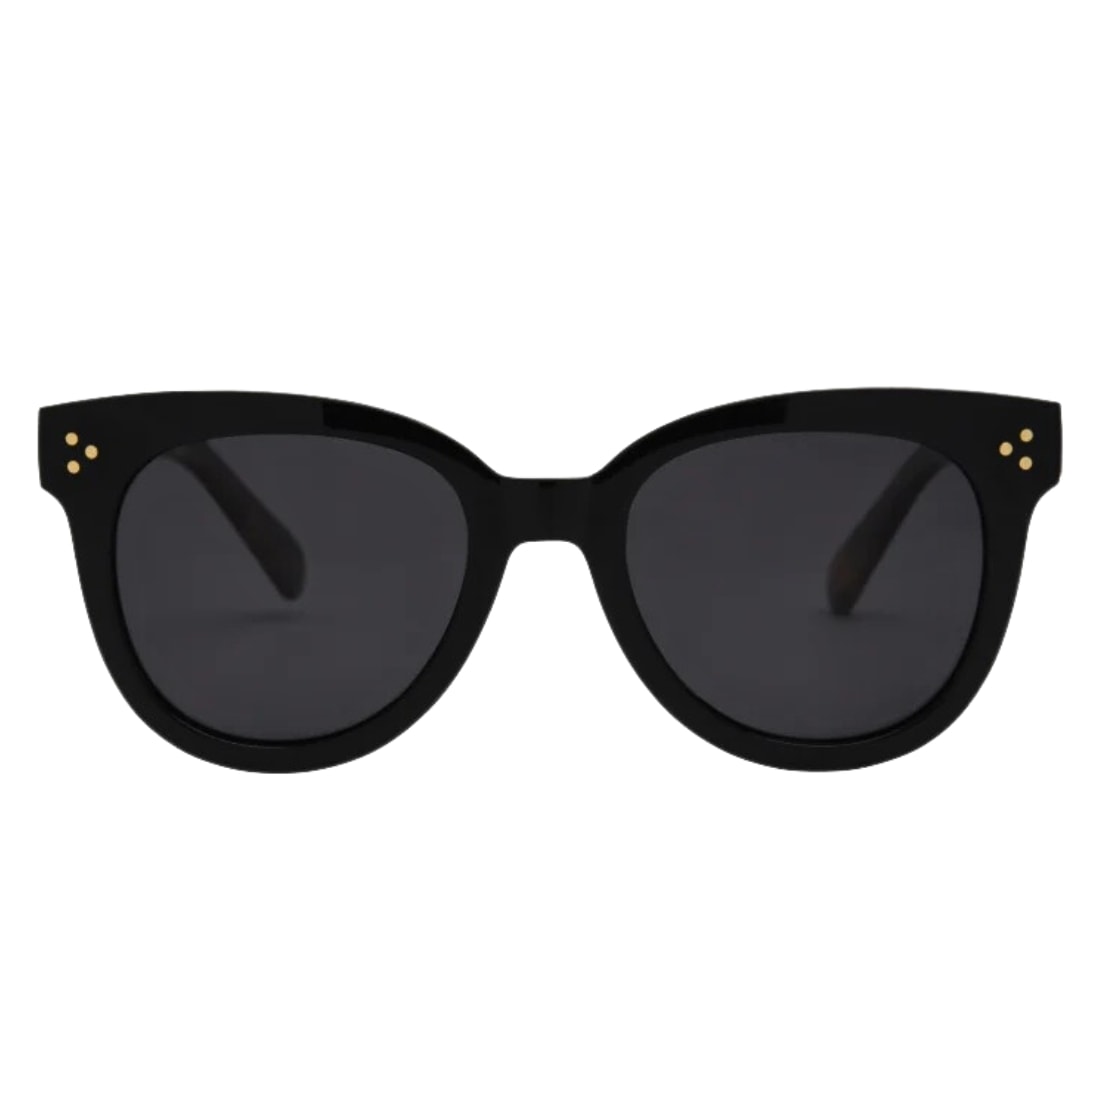 I-Sea Cleo Rounded Cat Eye Polarised Sunglasses - Black/Smoke Polarized Lens - Cat Eye Sunglasses by I-Sea